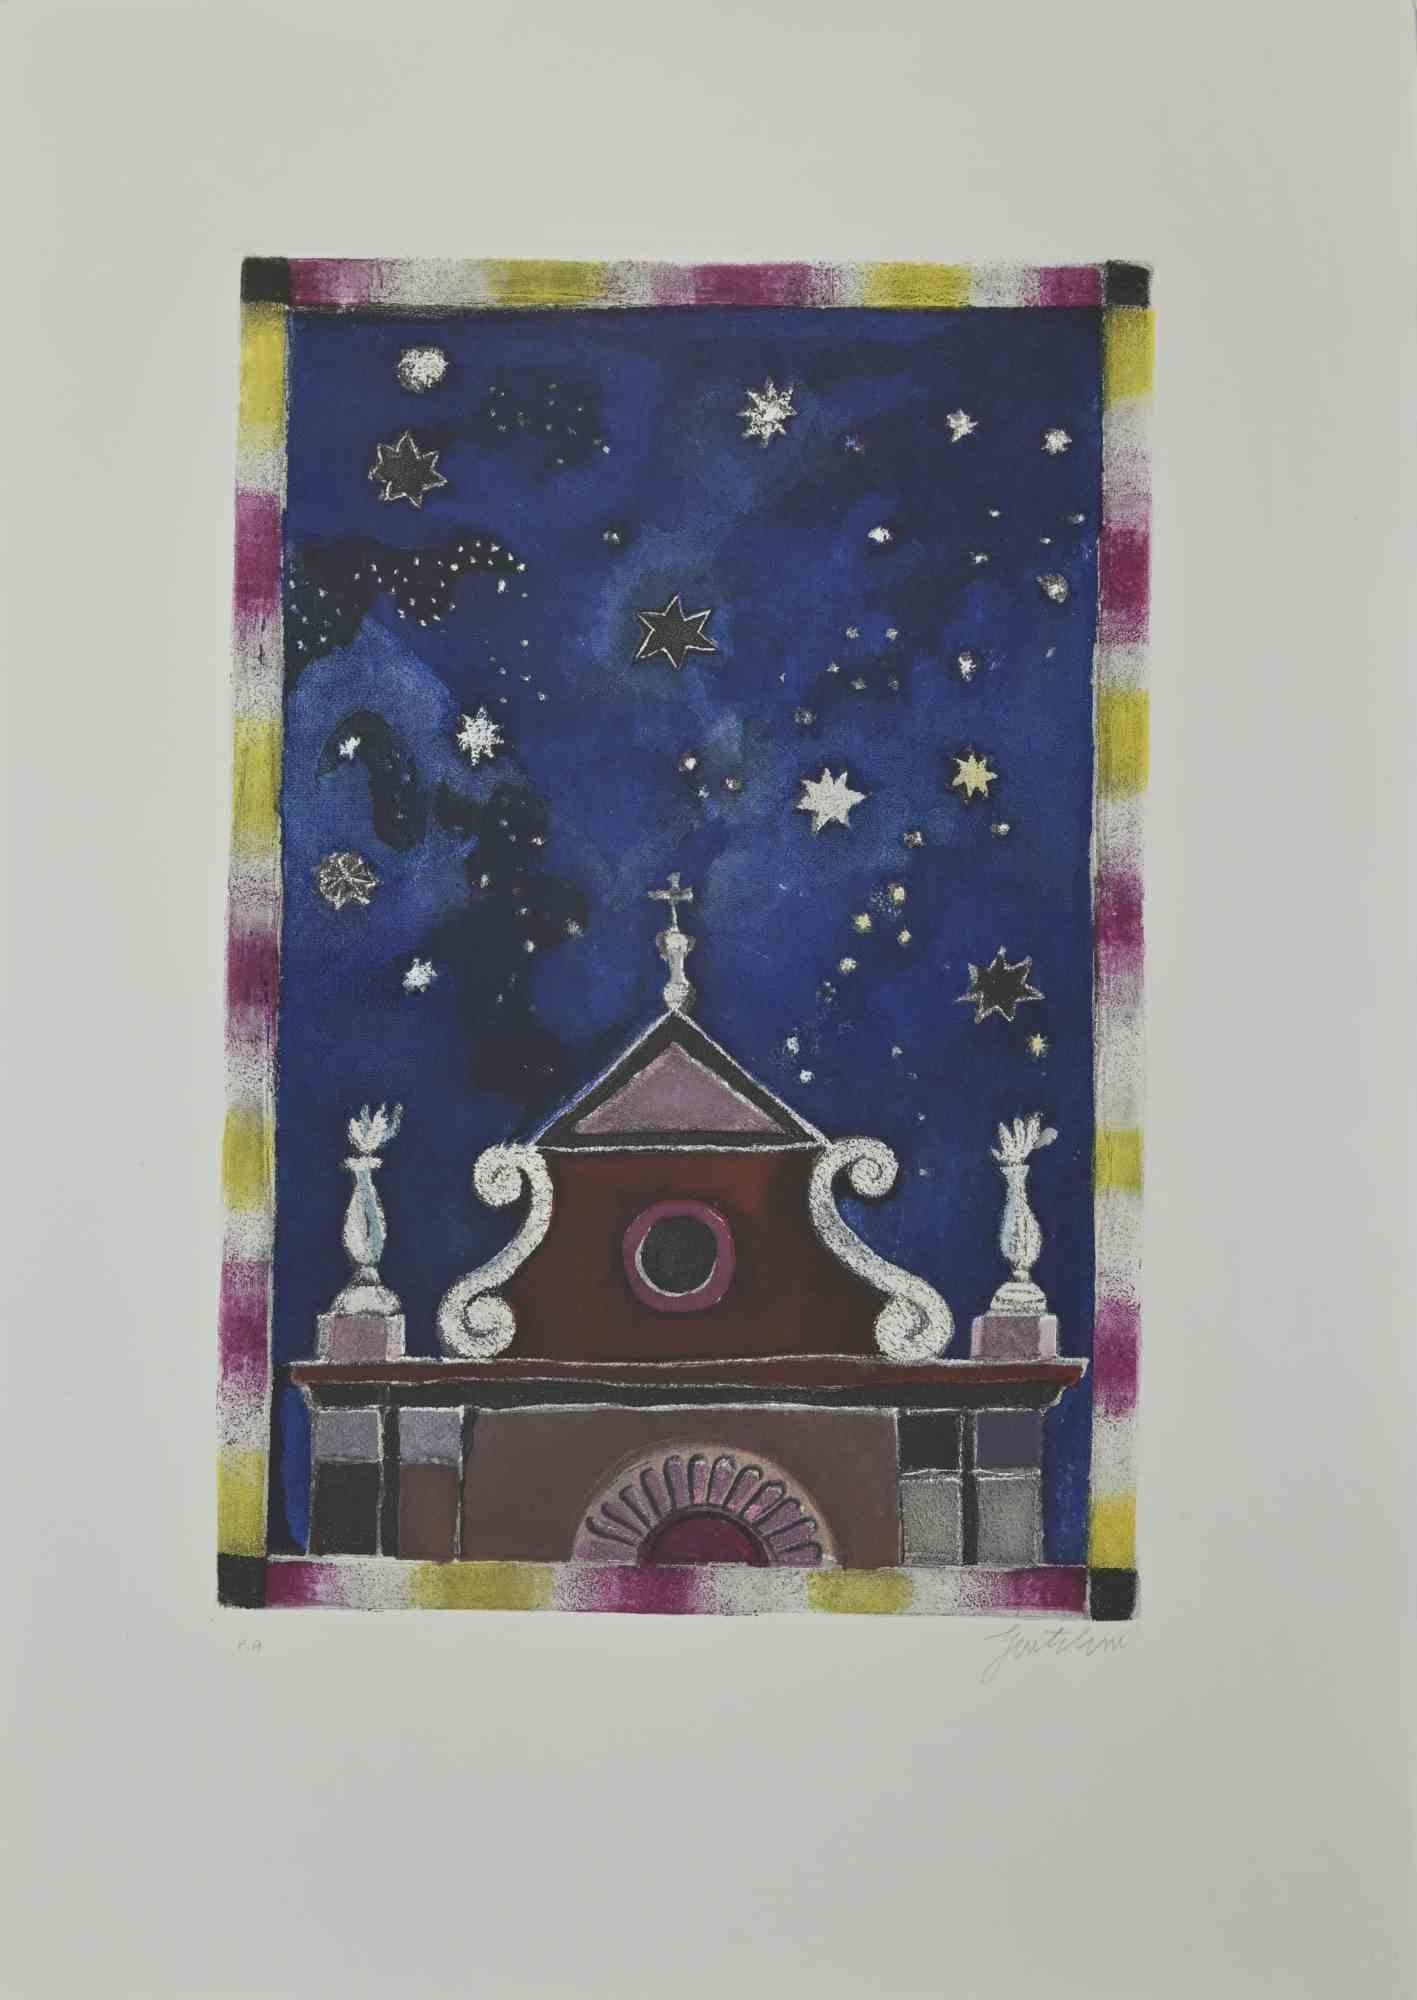 Les Étoiles est une eau-forte et une aquatinte réalisées par Franco Gentilini (peintre italien, 1909-1981) dans les années 1970.

De la série "Les Tarots" Timbre à sec de Il Cigno Stamperia d'Arte. 

Signé à la main au crayon sur la partie